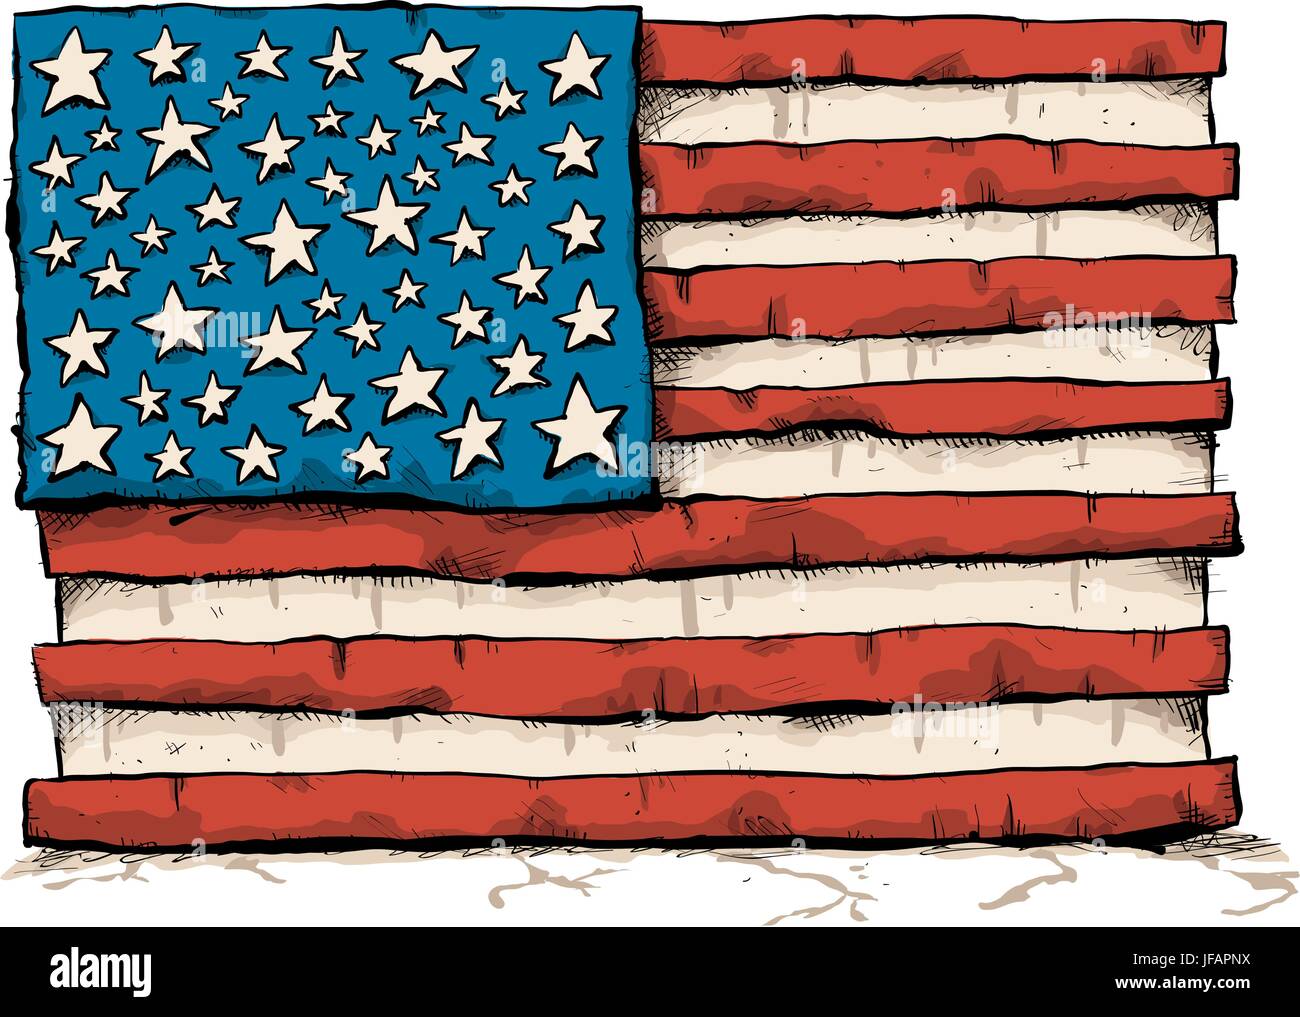 Eine grobe Karikatur von der Flagge der Vereinigten Staaten von Amerika. Stock Vektor